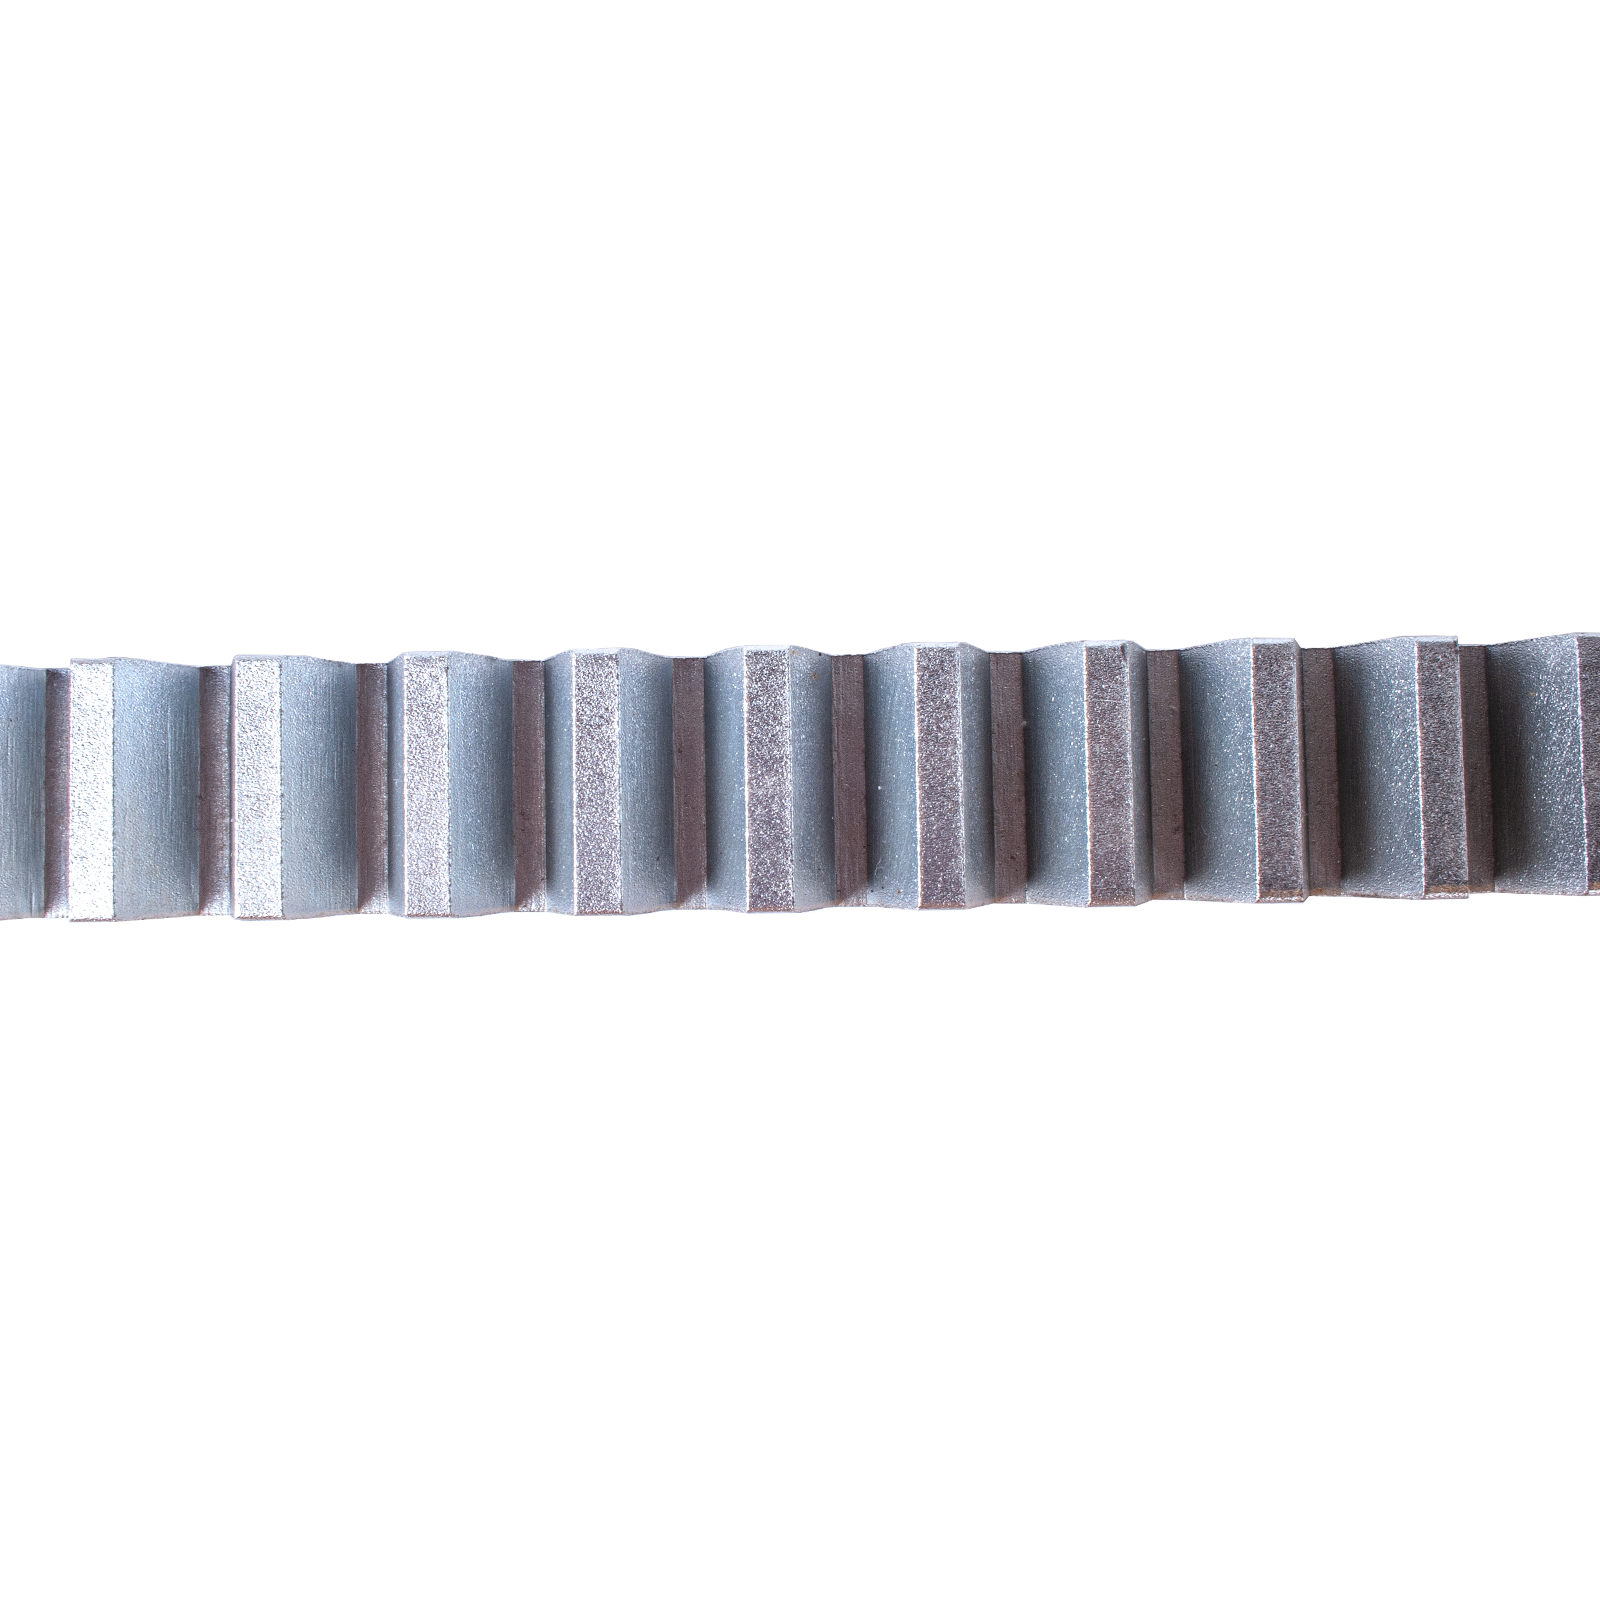 Stahlzahnstange für schwere Schiebetore 30x30 mm Industrie Zahnstange Modul 6 